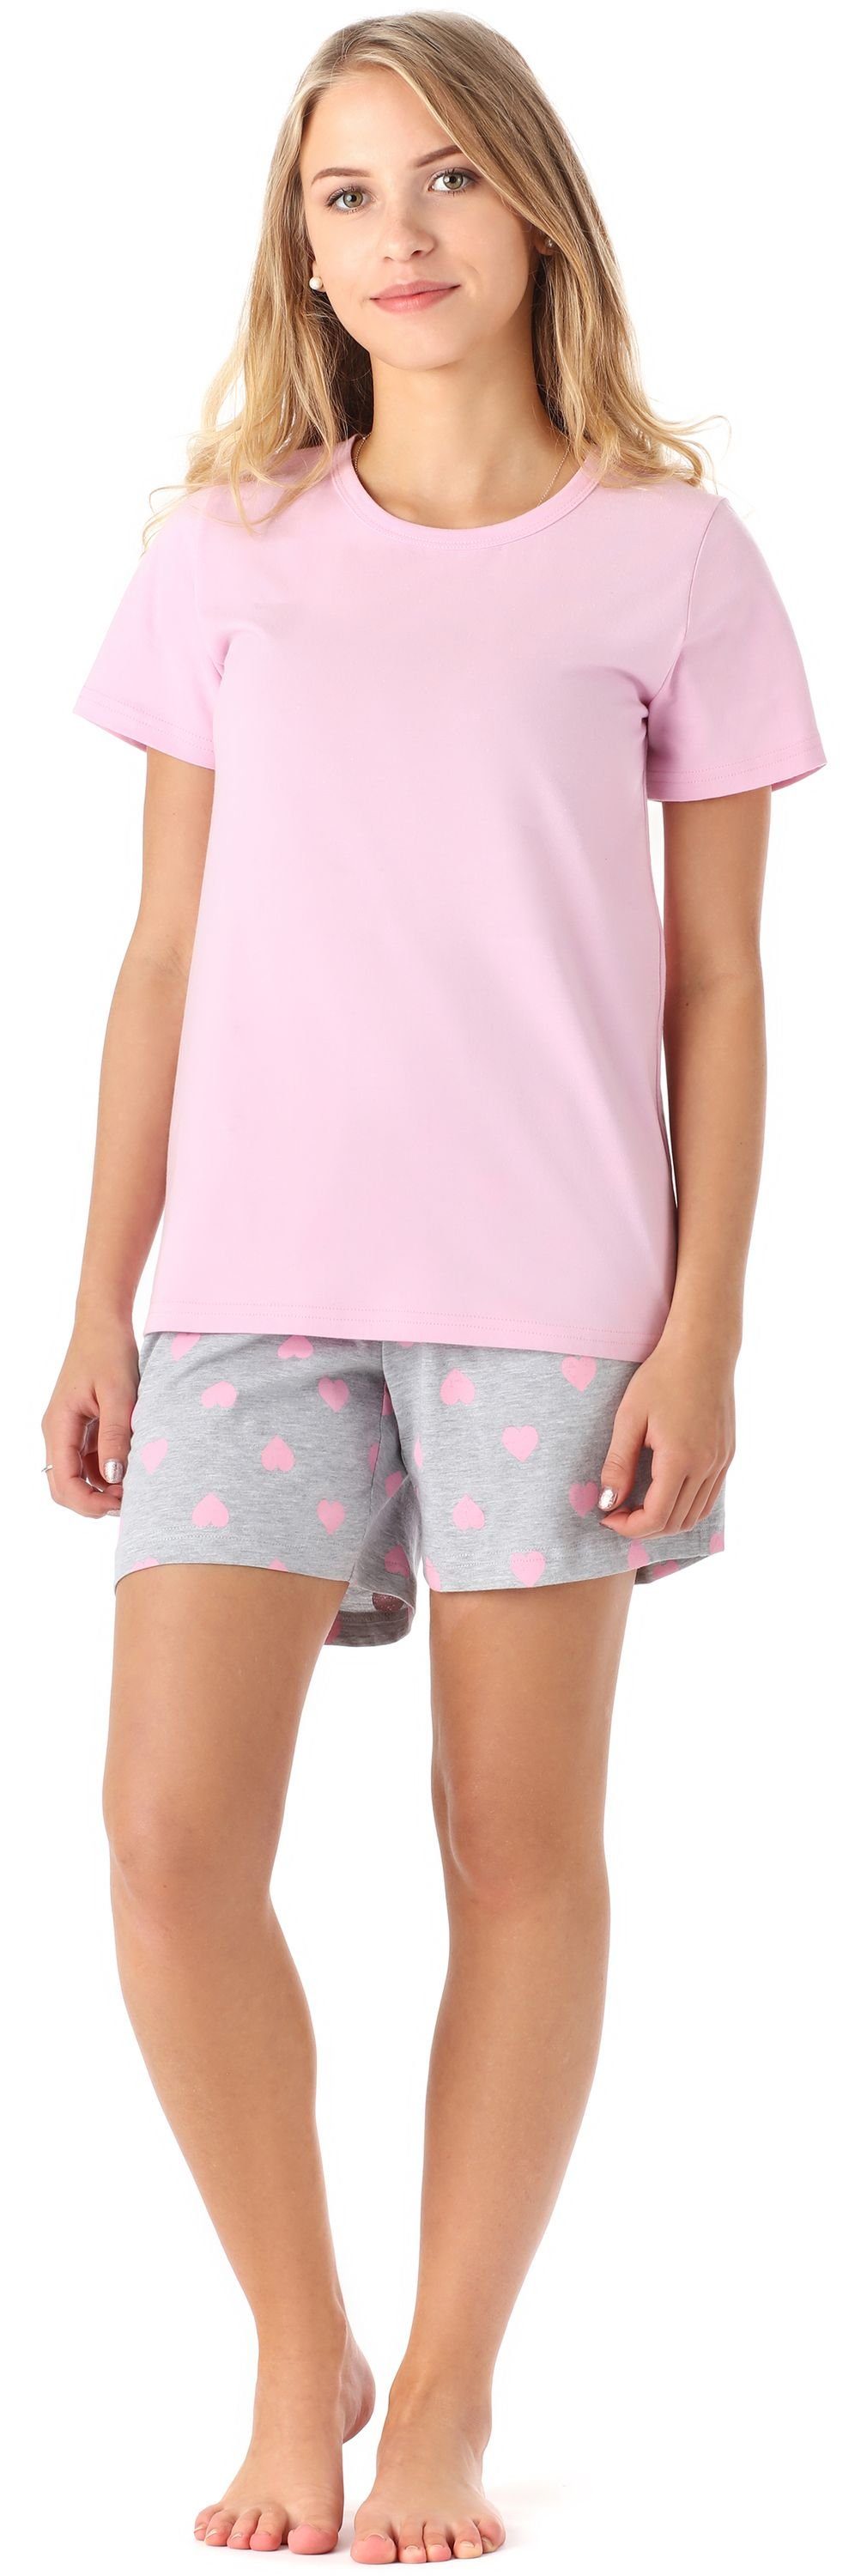 Schlafanzug Mädchen aus Kurz Set Rosa Herz Baumwolle Merry Schlafanzüge MS10-265 Style Pyjama